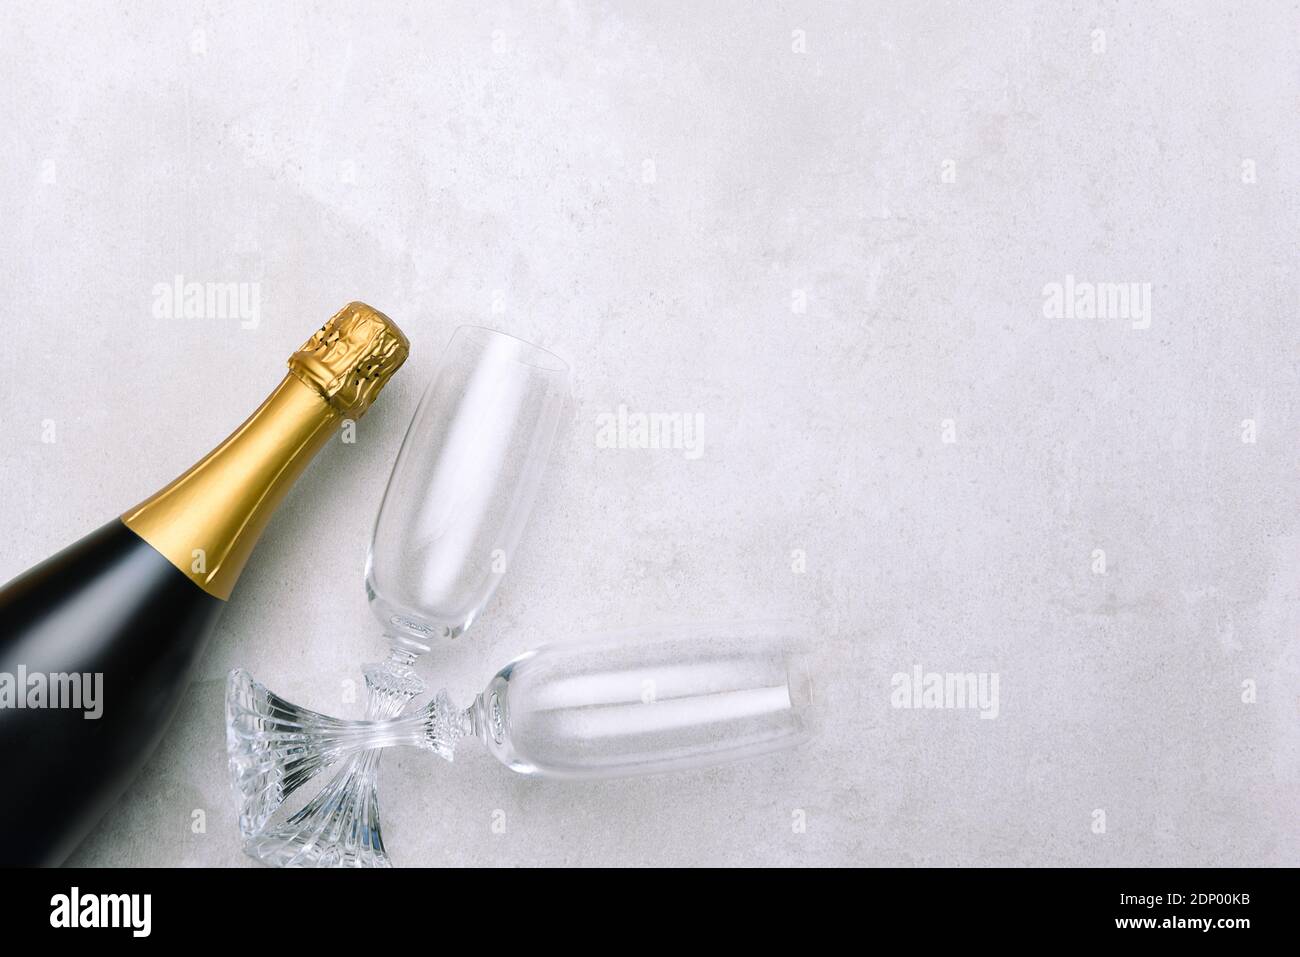 Botella de champán y vasos en una superficie gris claro. Formato horizontal con espacio de copia. Foto de stock